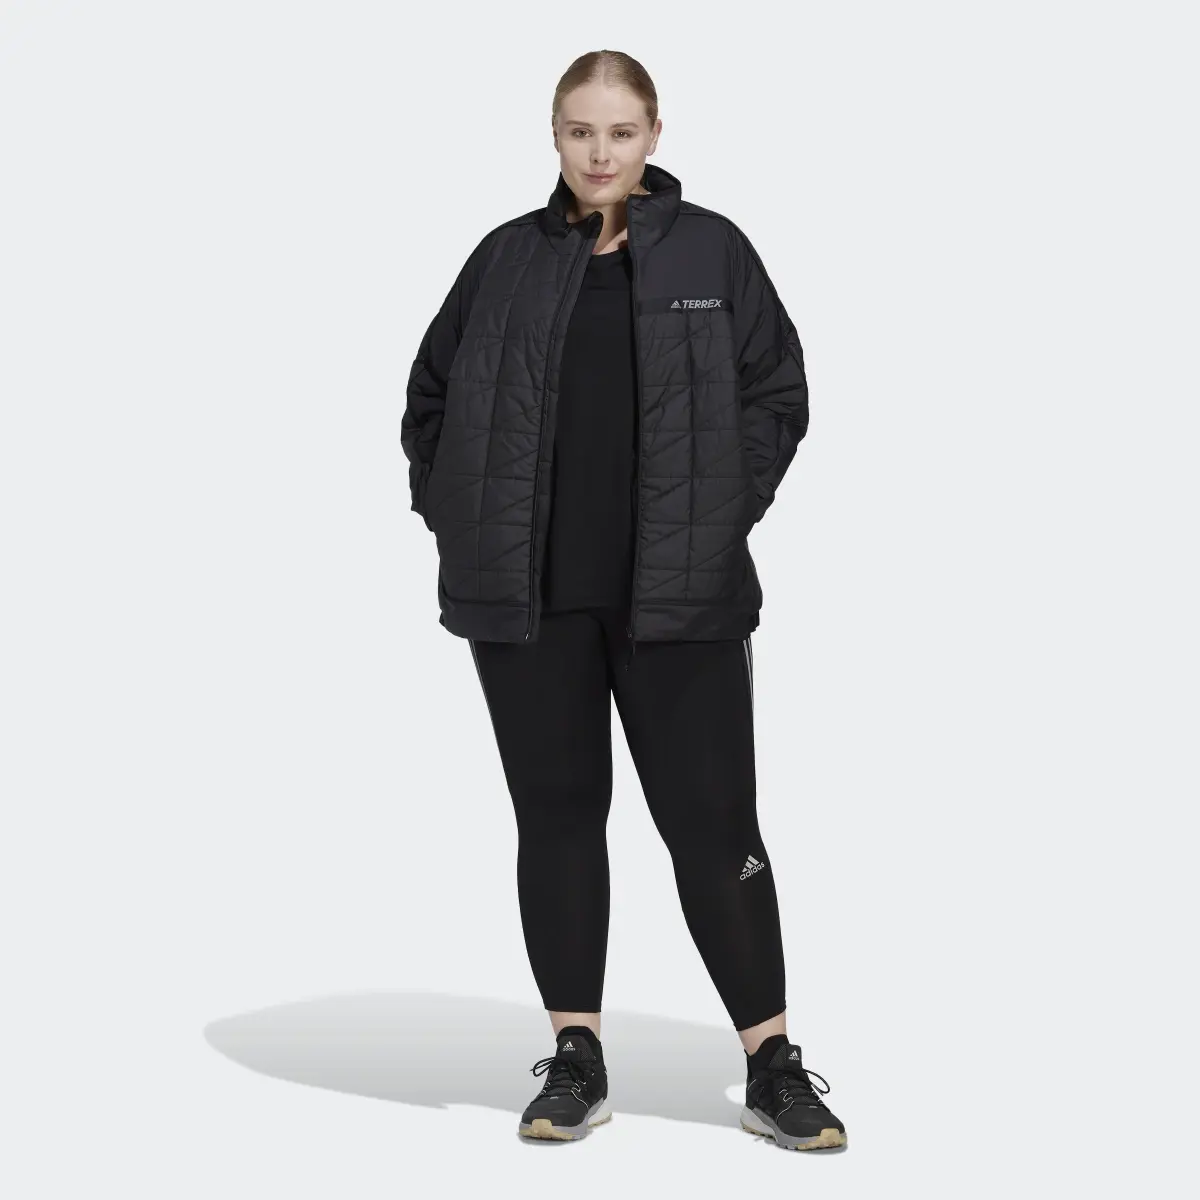 Adidas TERREX Multi Insulated Jacke – Große Größen. 2